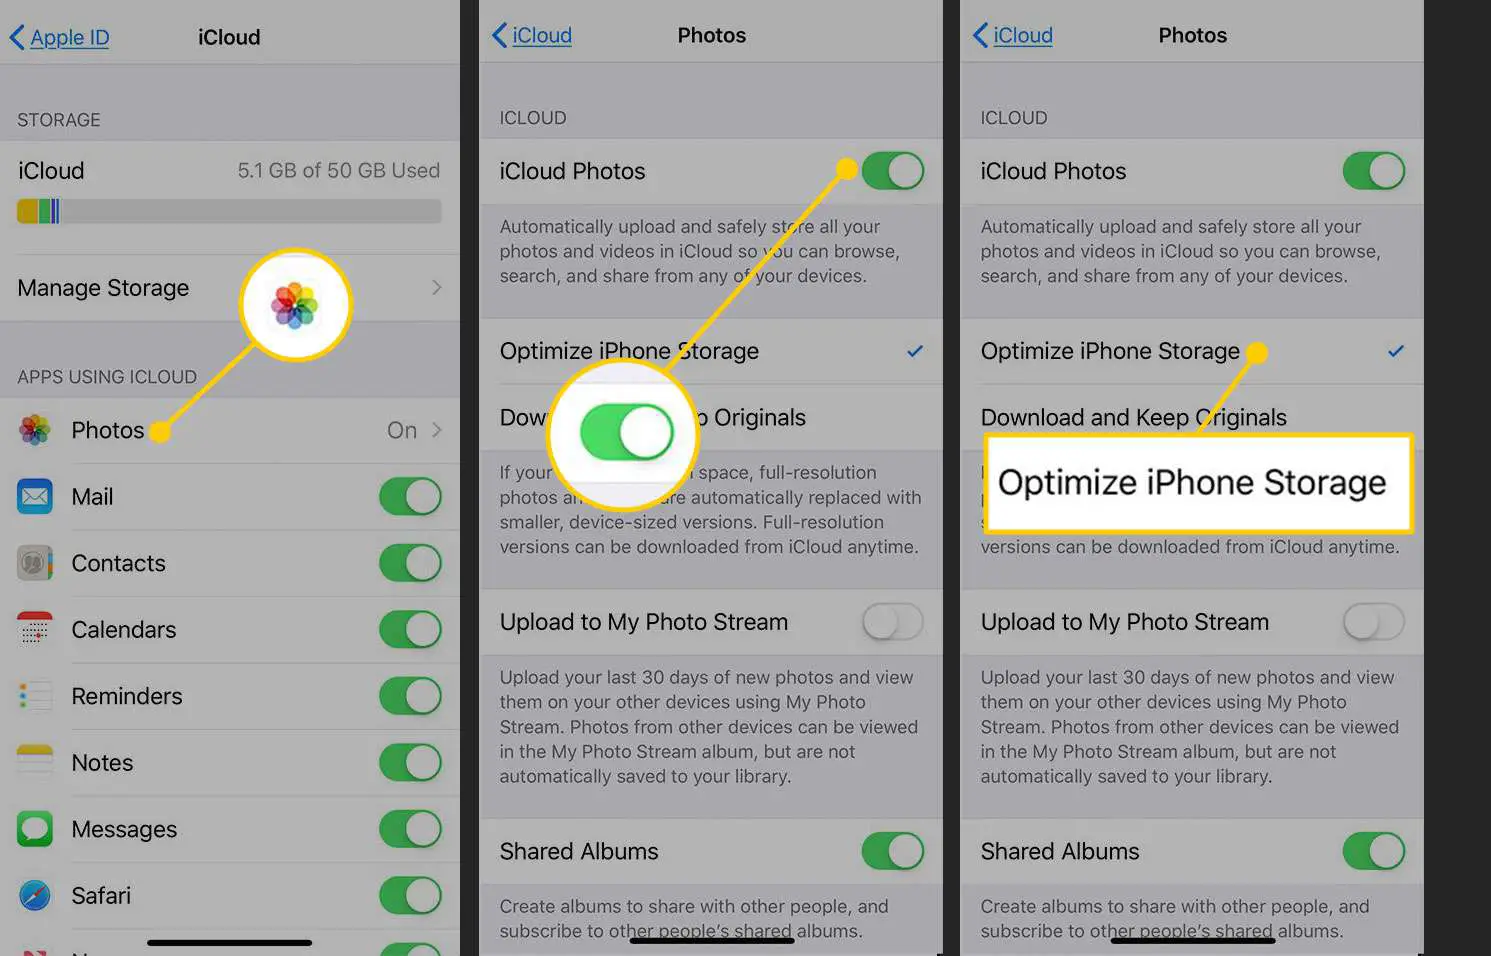 Telas do iCloud e Fotos com Otimizar armazenamento do iPhone em destaque